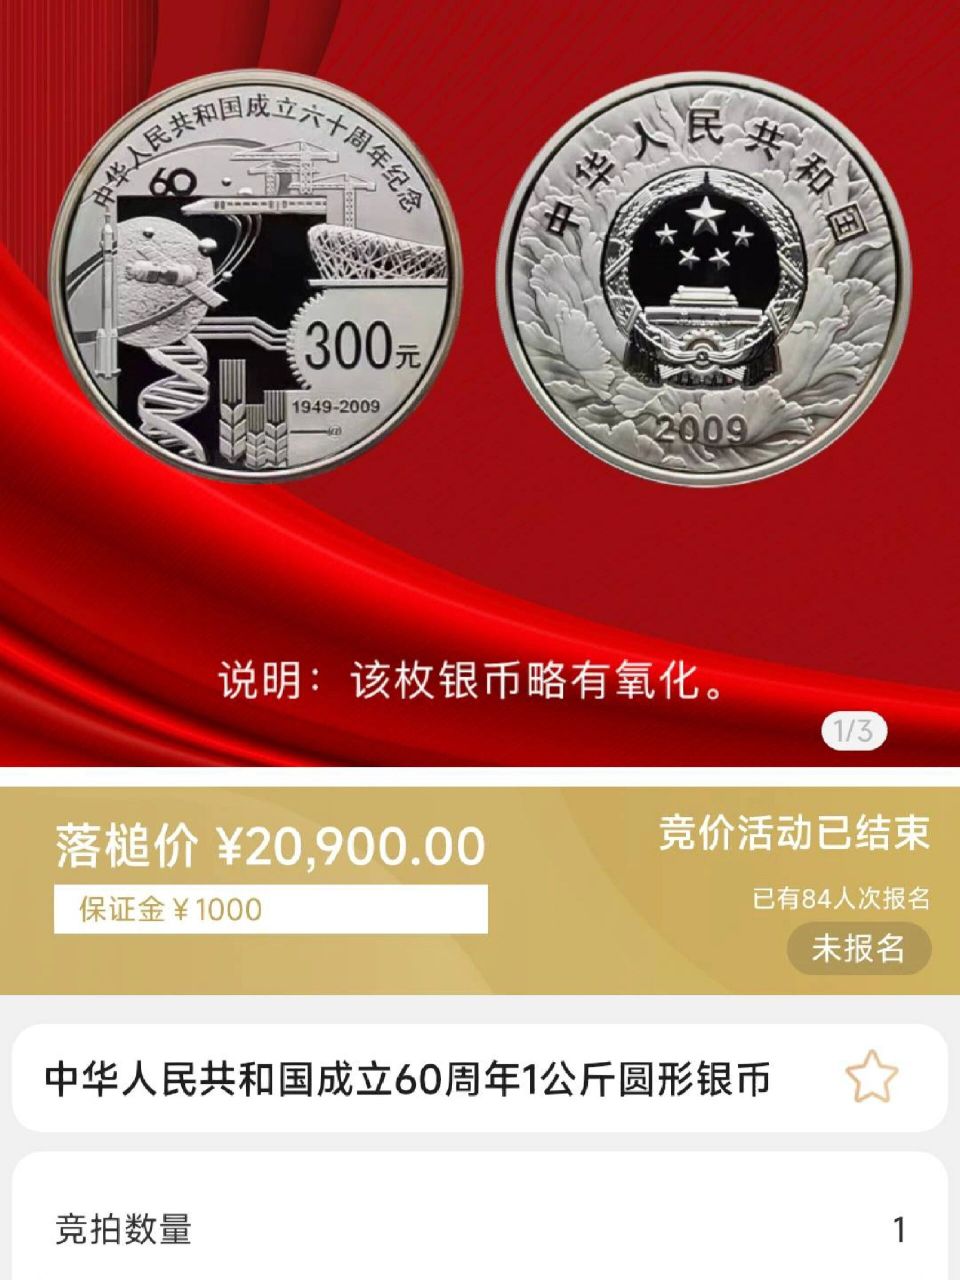 建国60周年纪念币,20900一枚,519成交  1000克圆形银币,拍卖出价57次